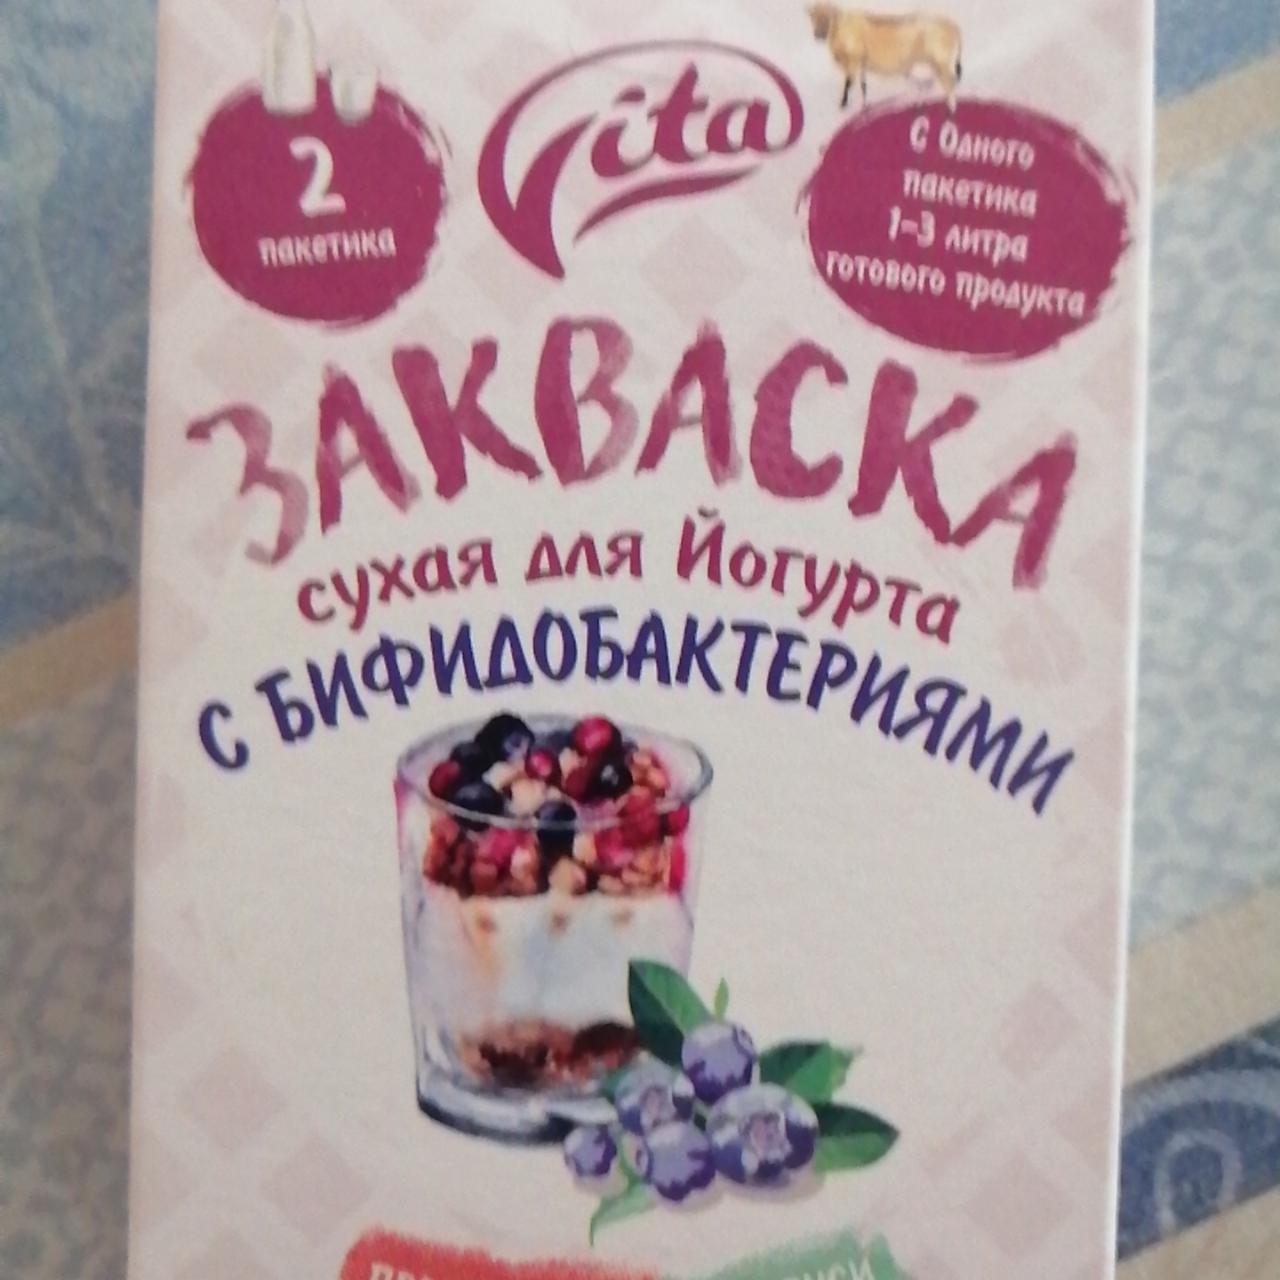 Фото - Закваска сухая для йогурта с бифидобактериями Vita